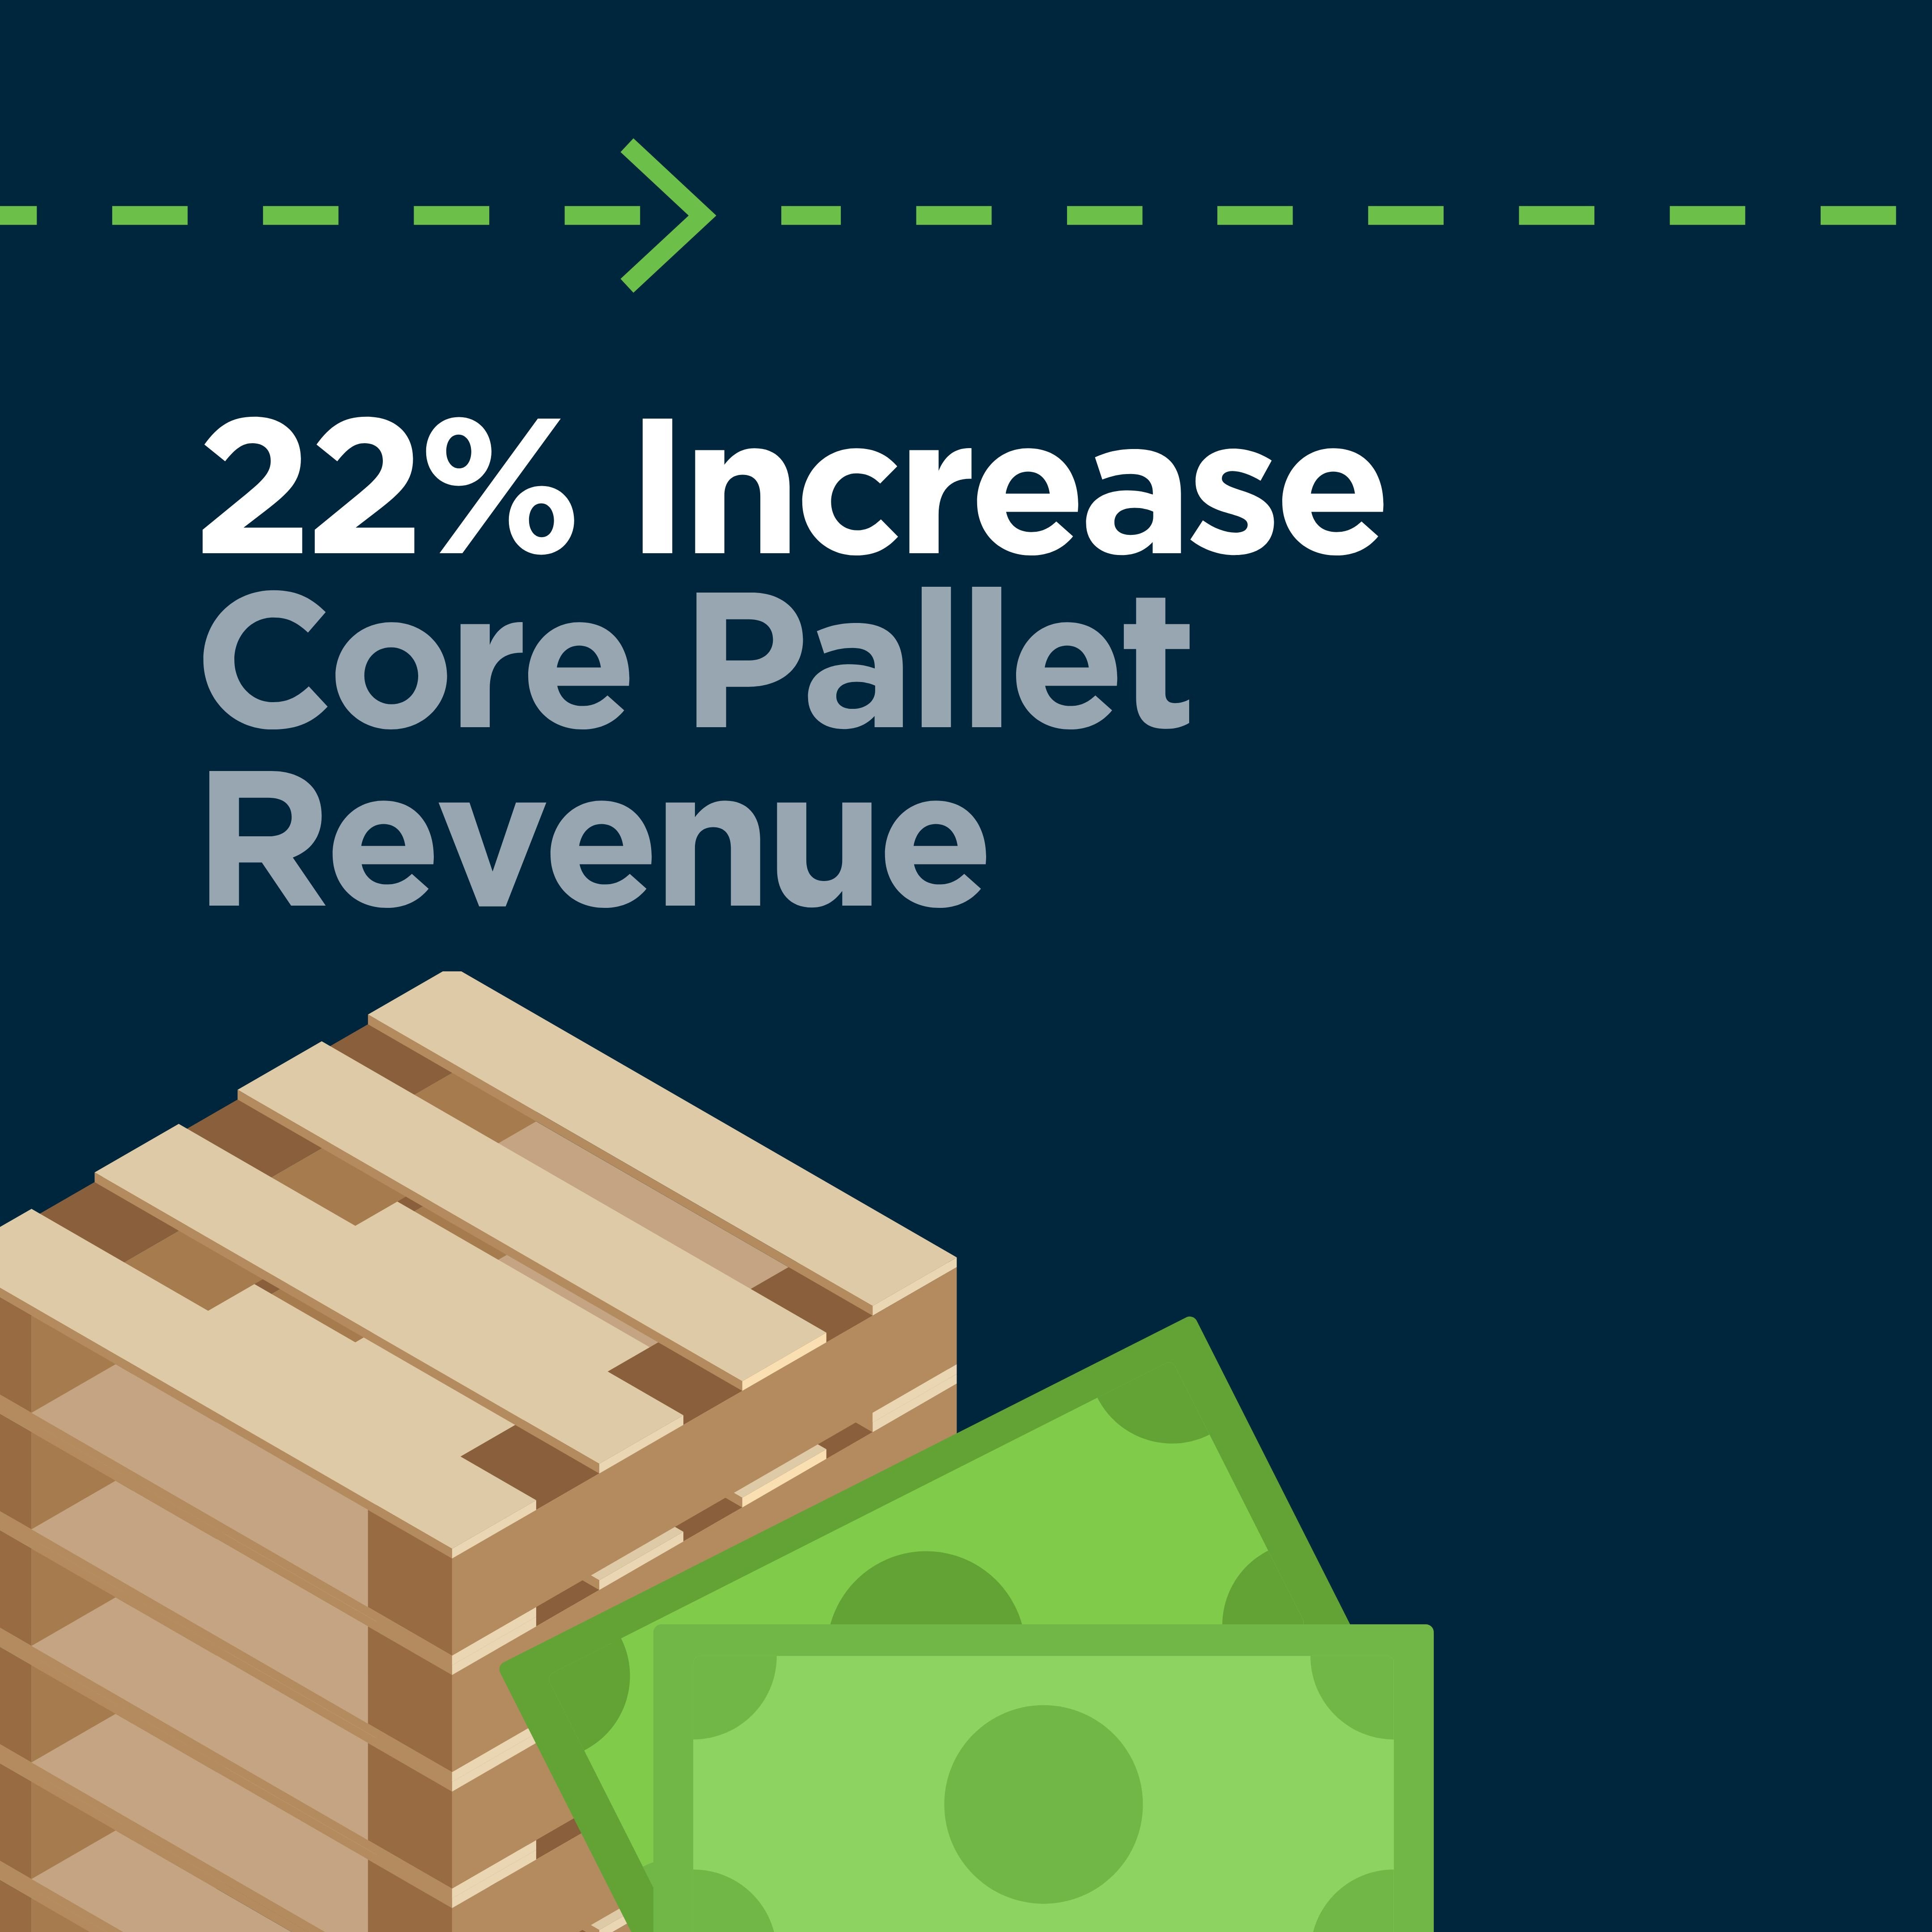 22% increase core pallet revenue